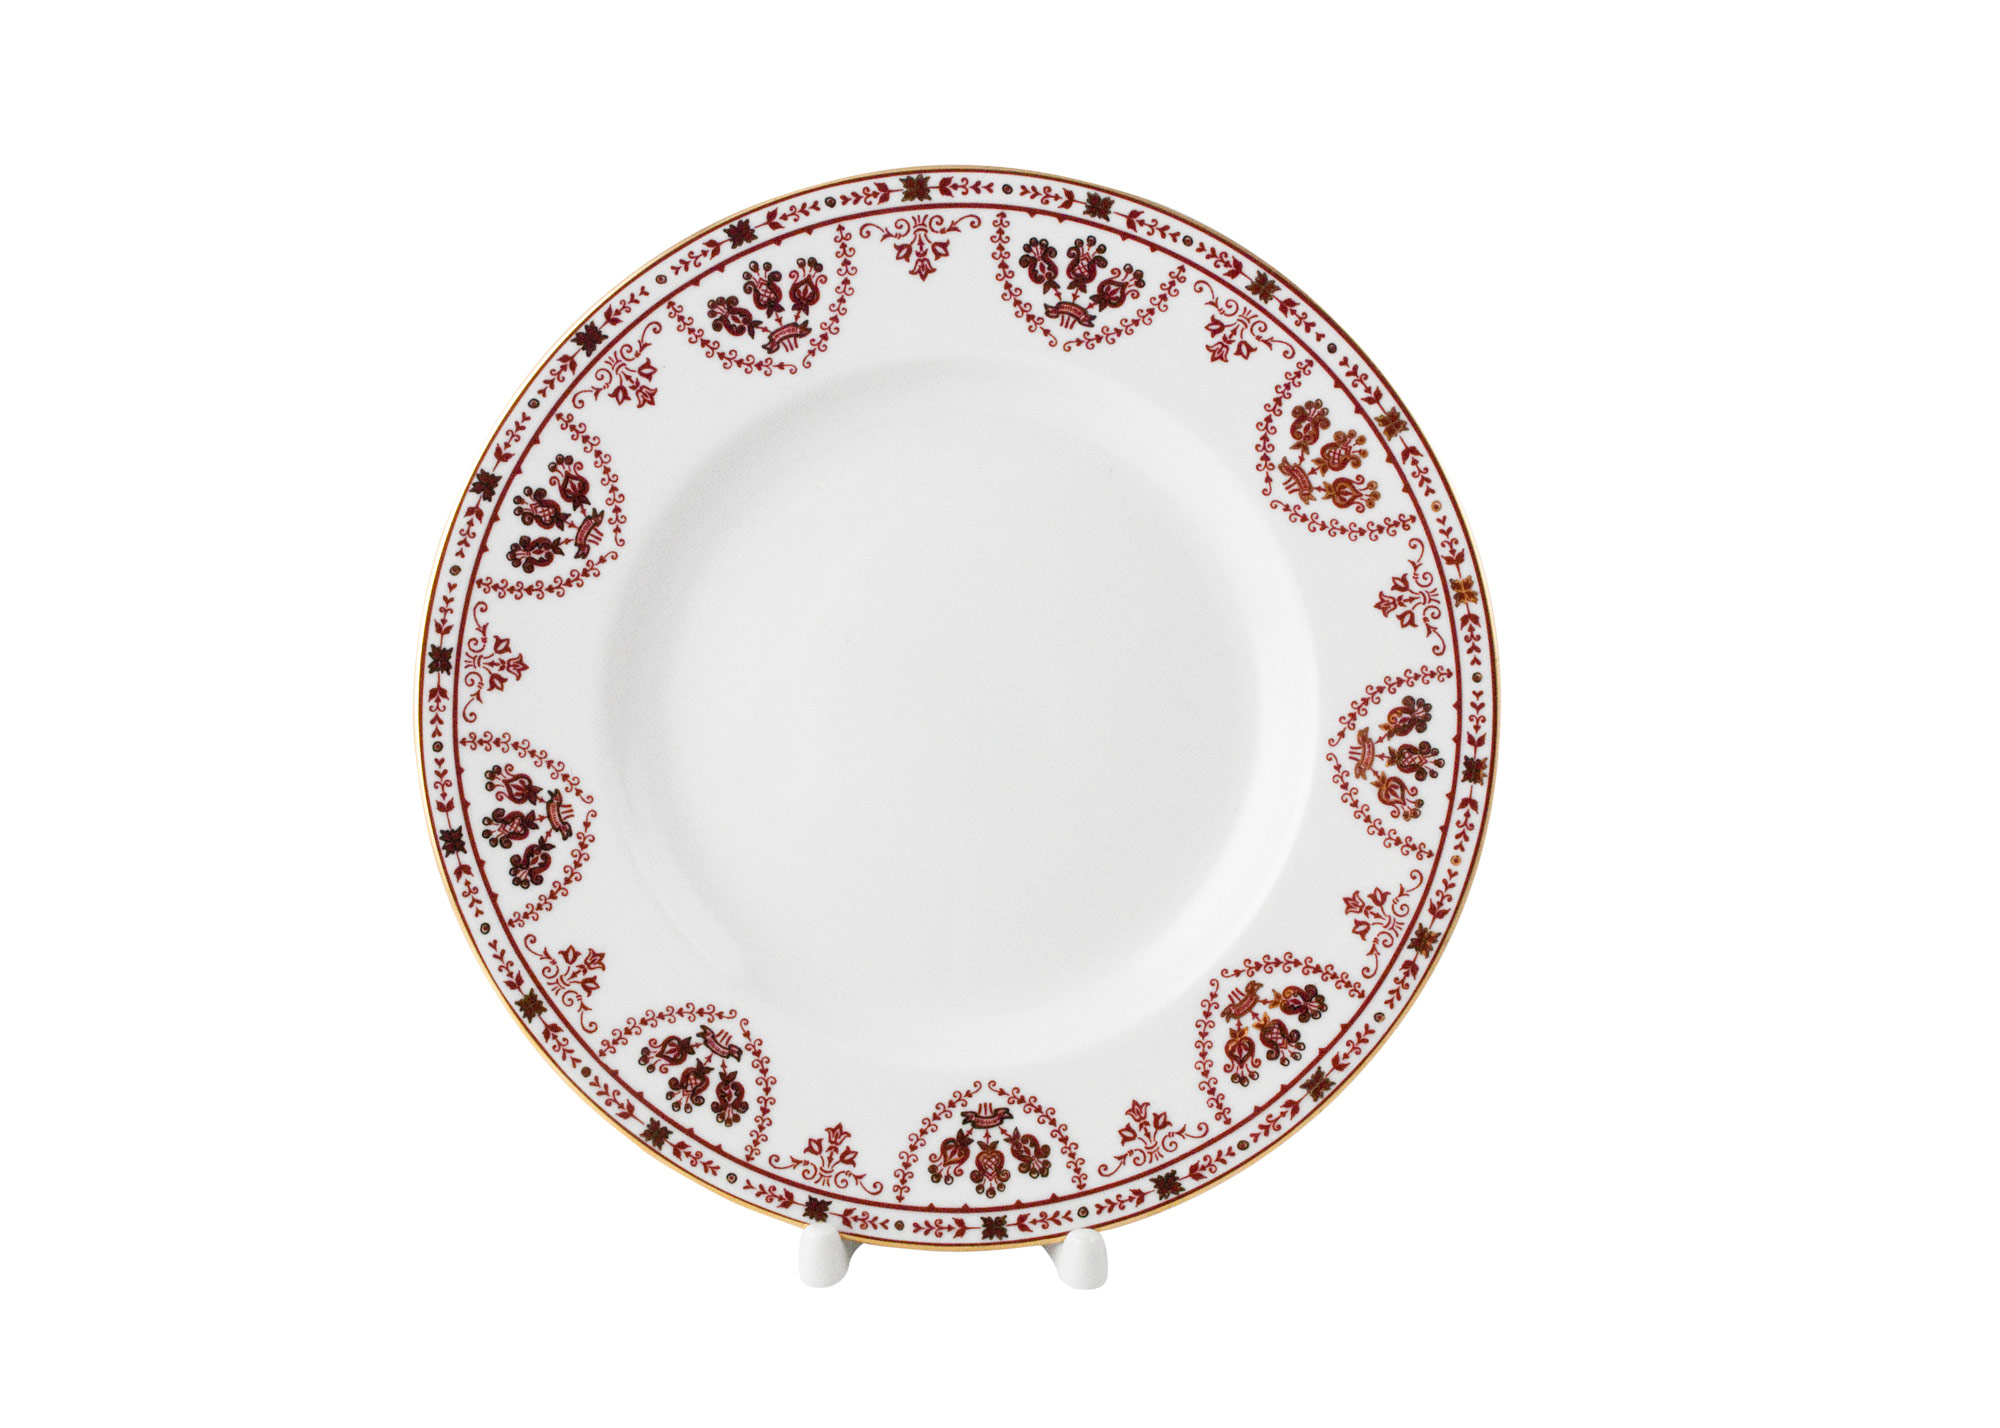 Buy Terracotta Frieze Dinner Plate, 9 3/4" at GoldenCockerel.com